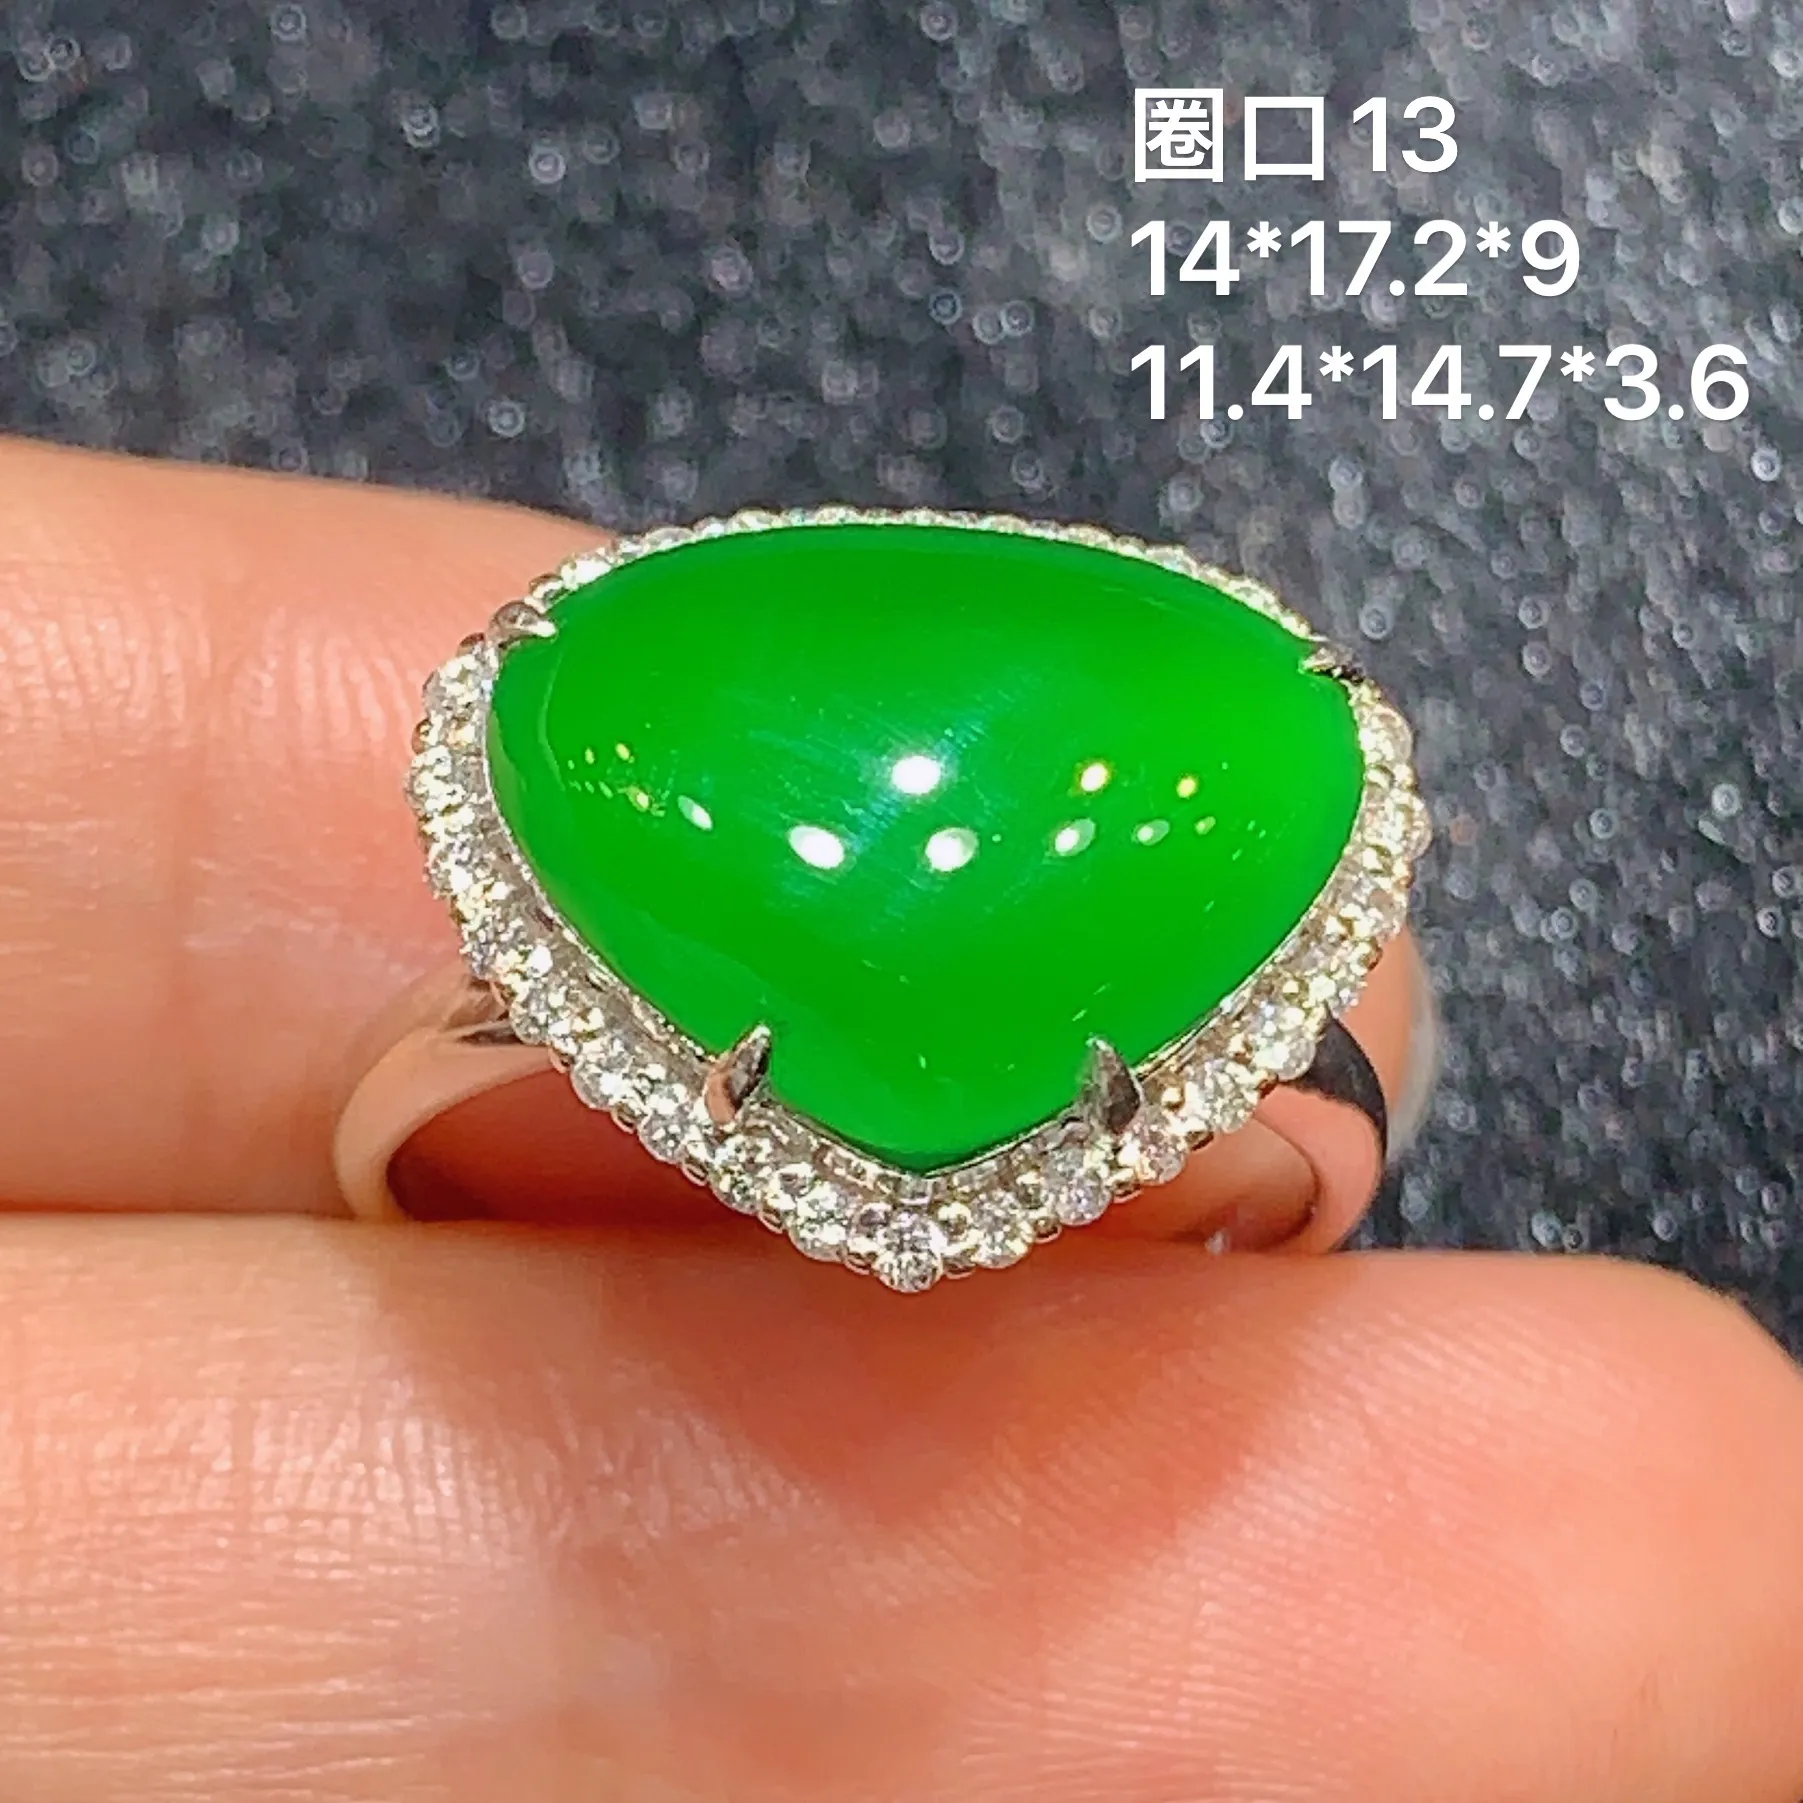 18k金钻镶嵌满绿心形戒指 玉质细腻 色泽艳丽 款式新颖时尚高贵大气 圈口13 整体尺寸14*17.2*9